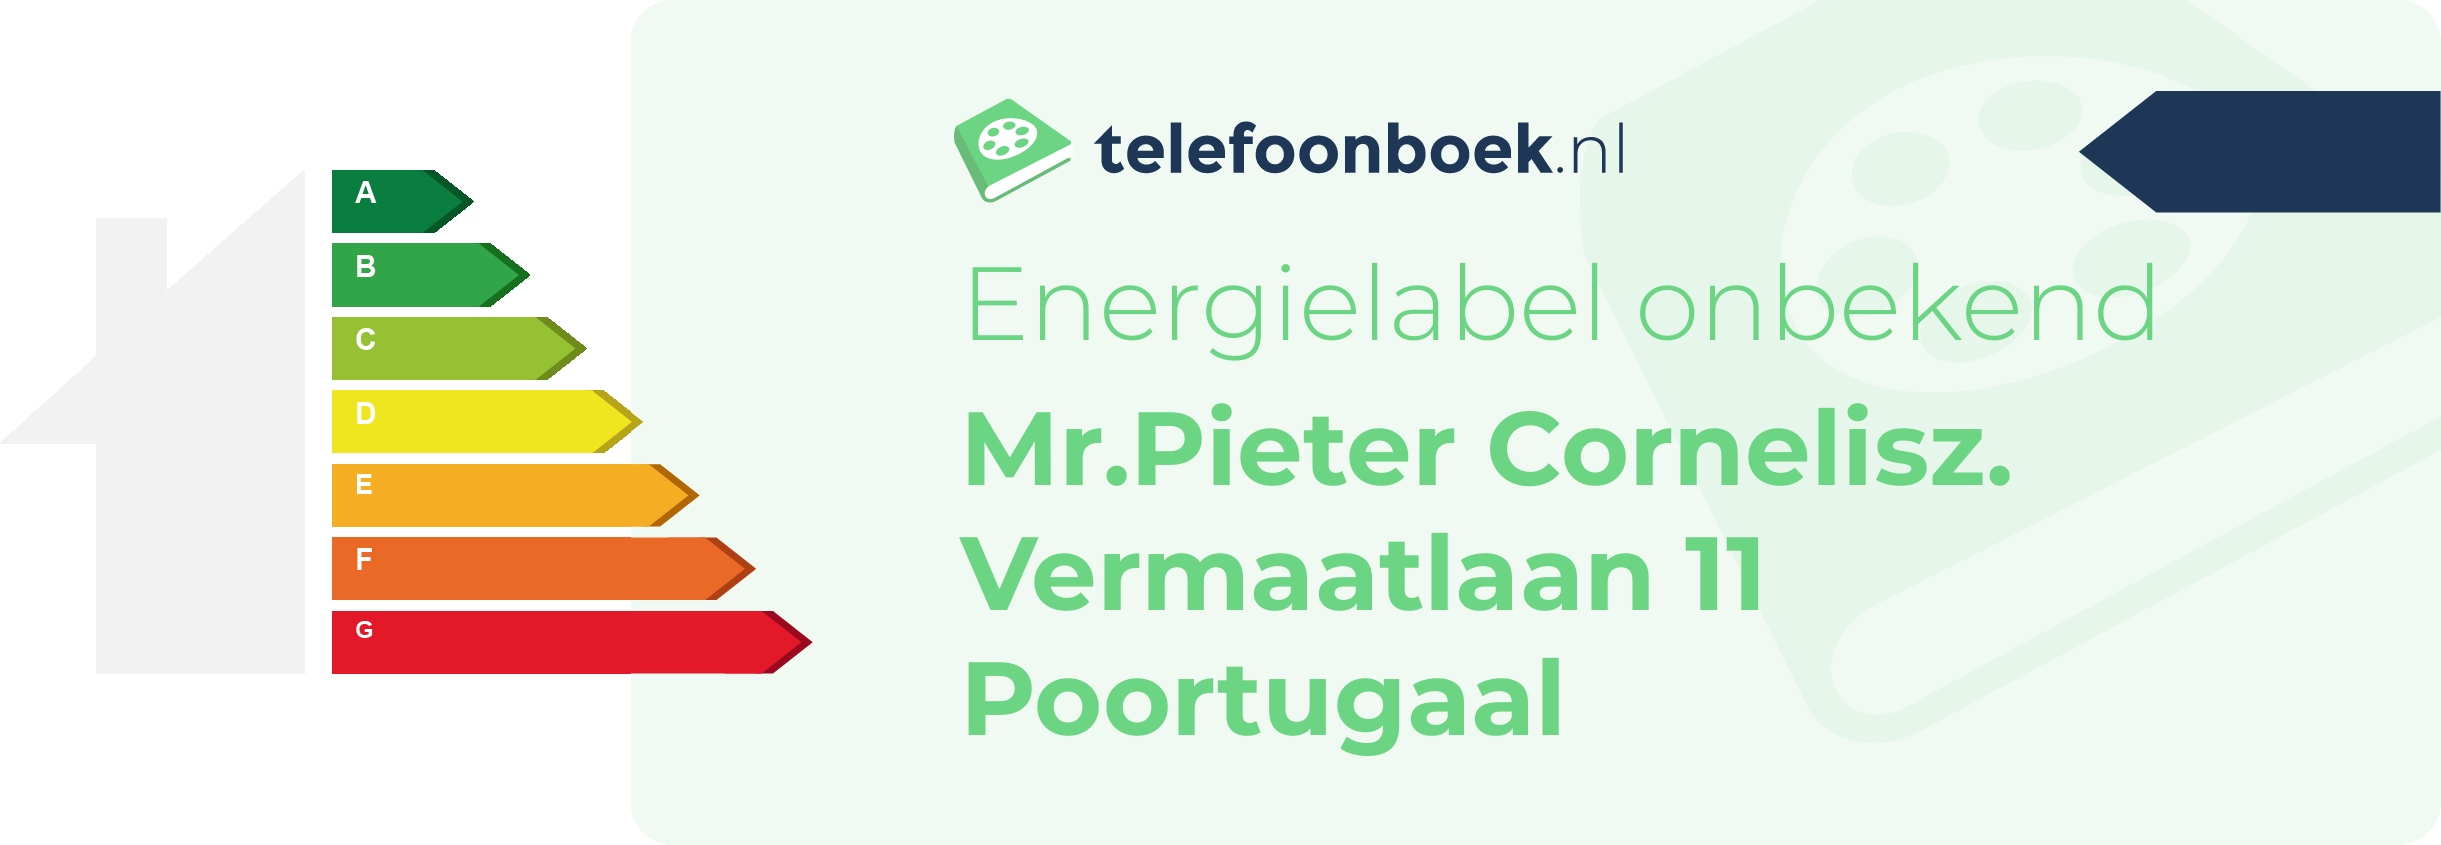 Energielabel Mr.Pieter Cornelisz. Vermaatlaan 11 Poortugaal